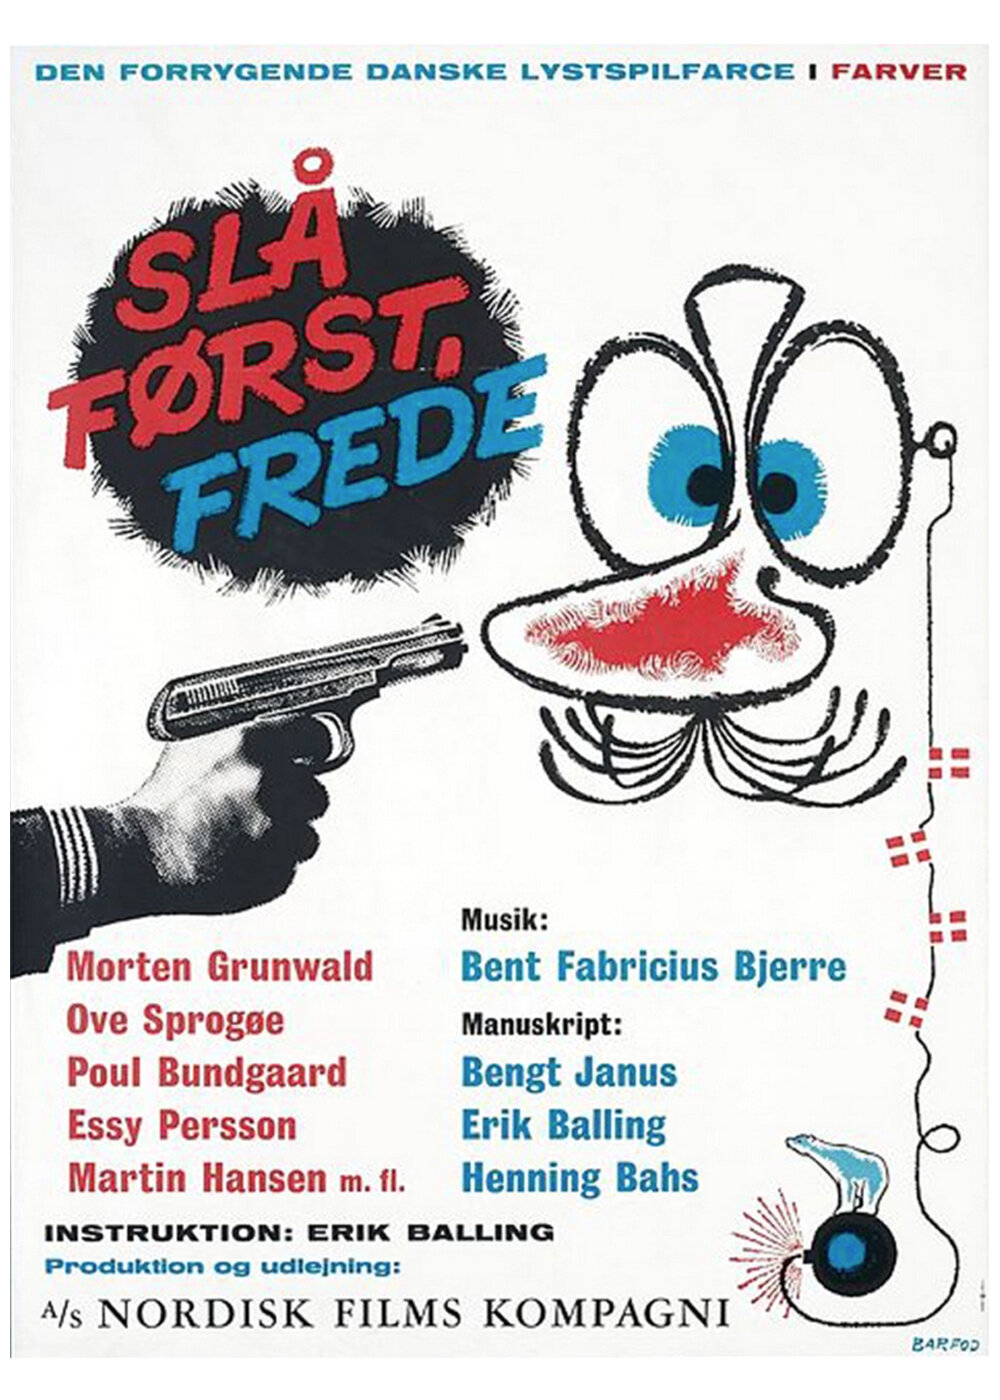 Strike First Freddy! (1965)